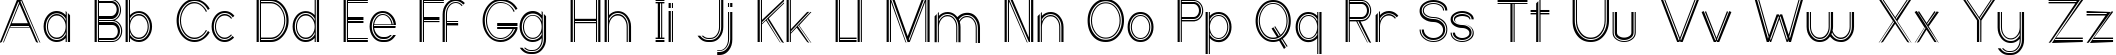 Пример написания английского алфавита шрифтом Ericott